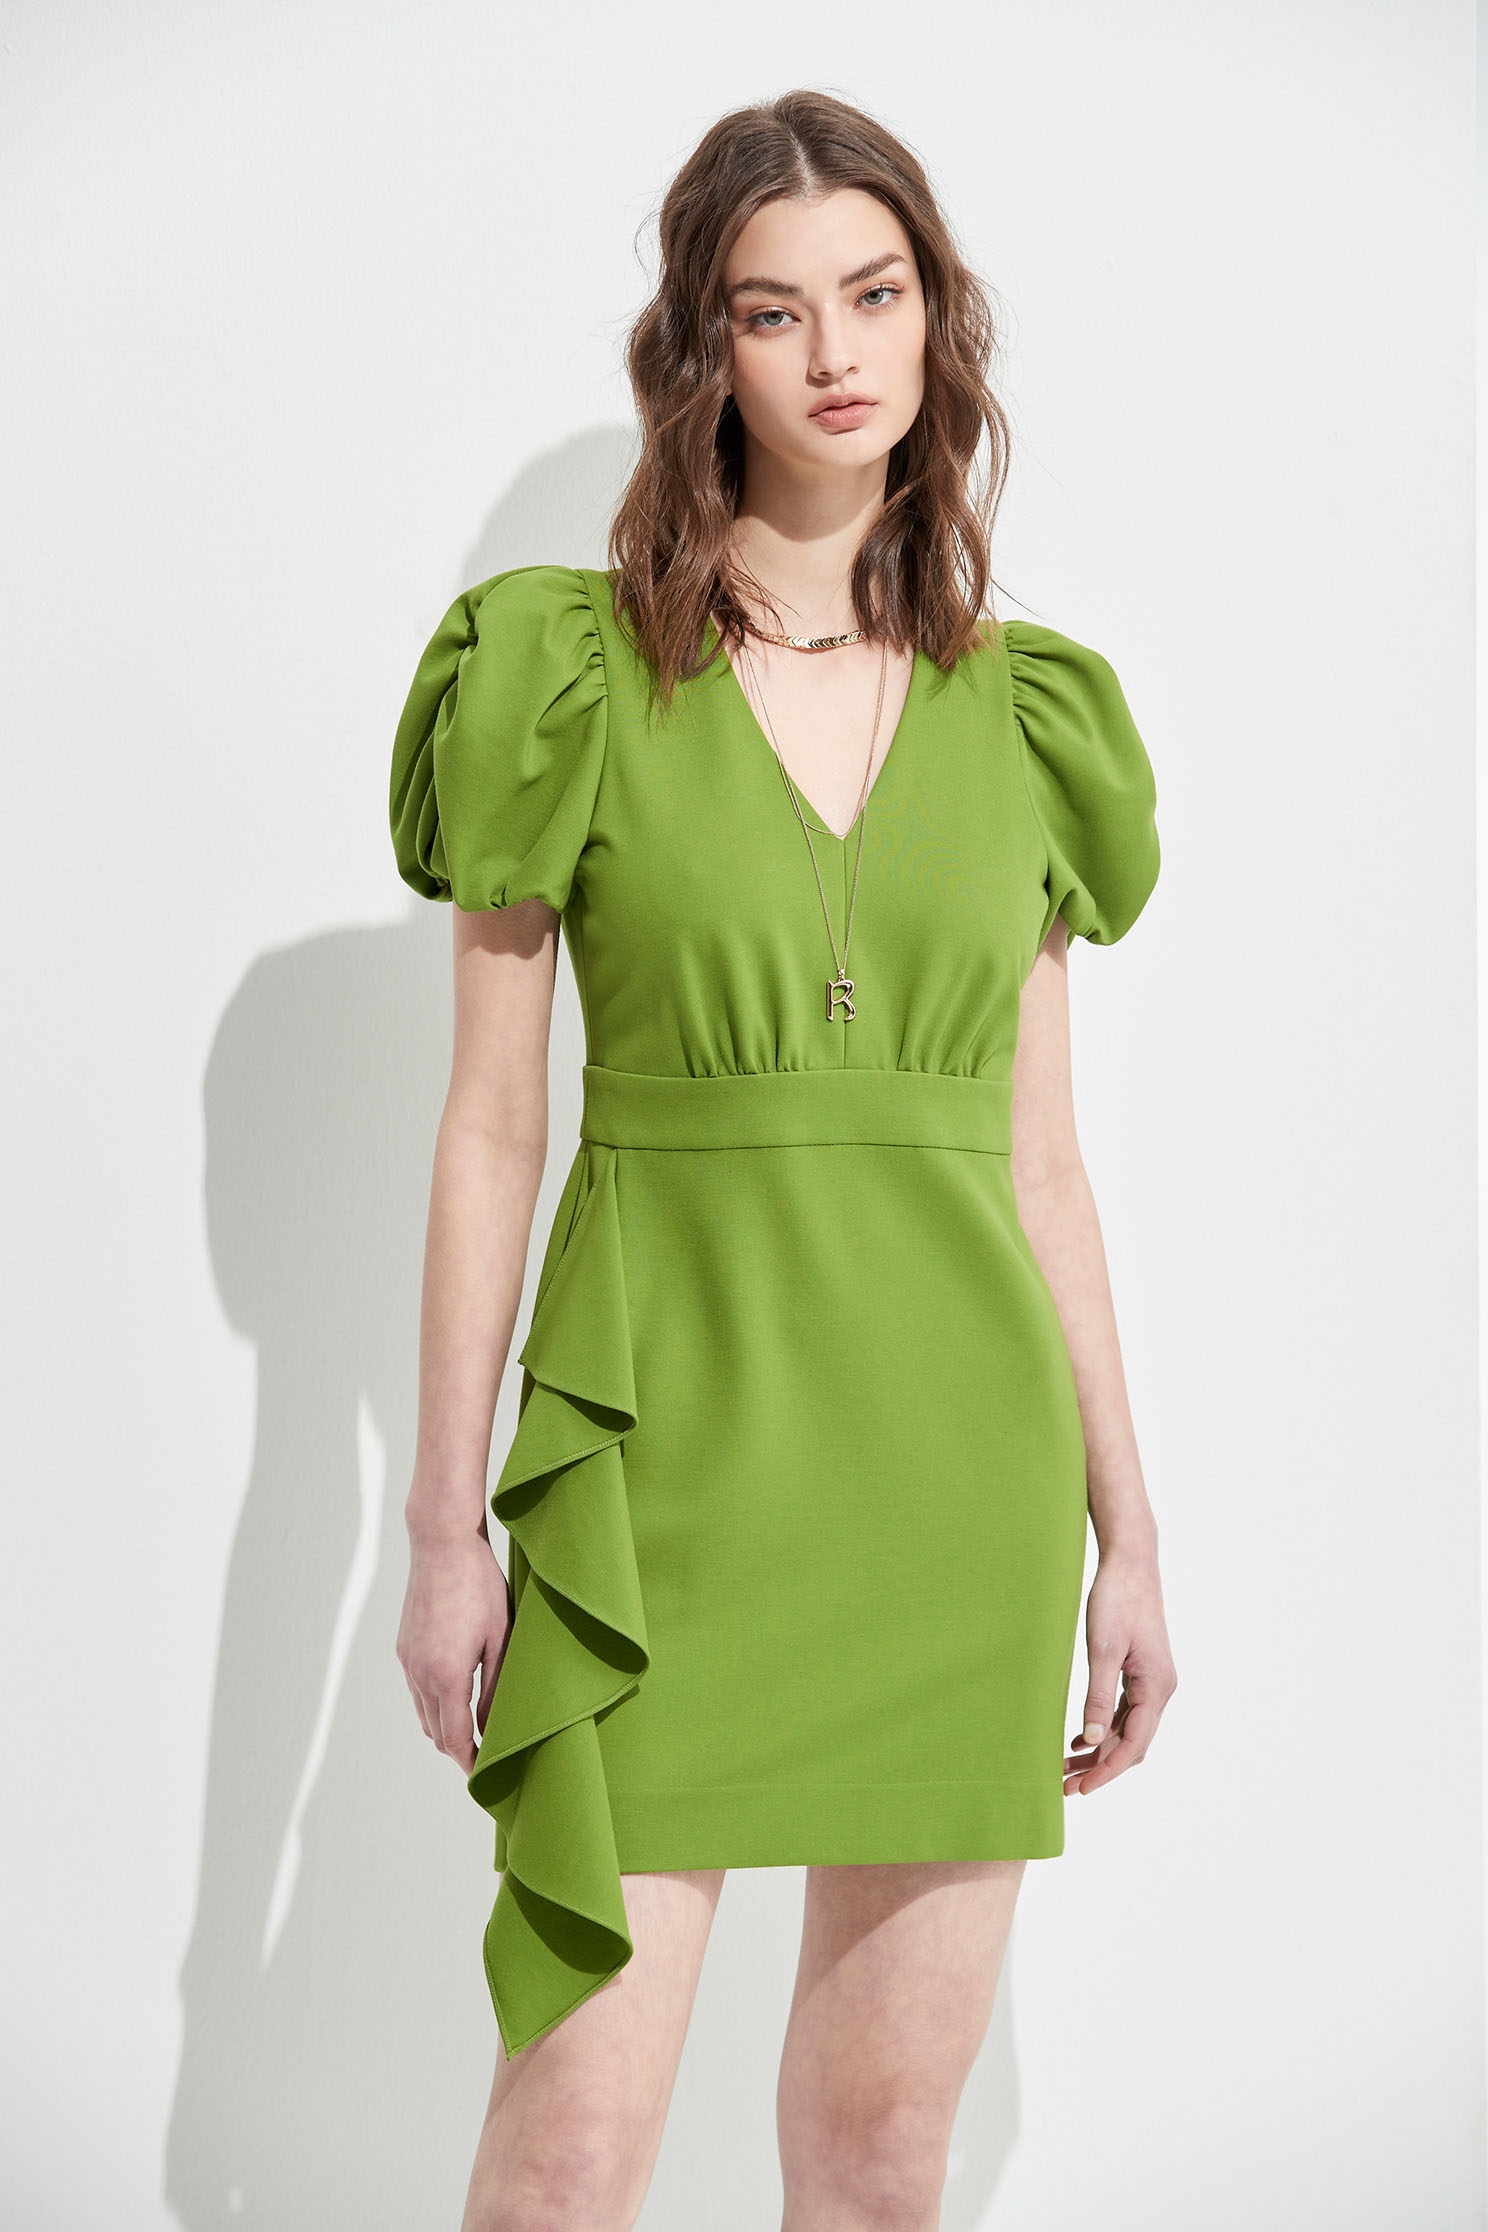 蘋果薄荷綠洋裝蘋果薄荷綠洋裝,一般洋裝,春夏穿搭,約會特輯